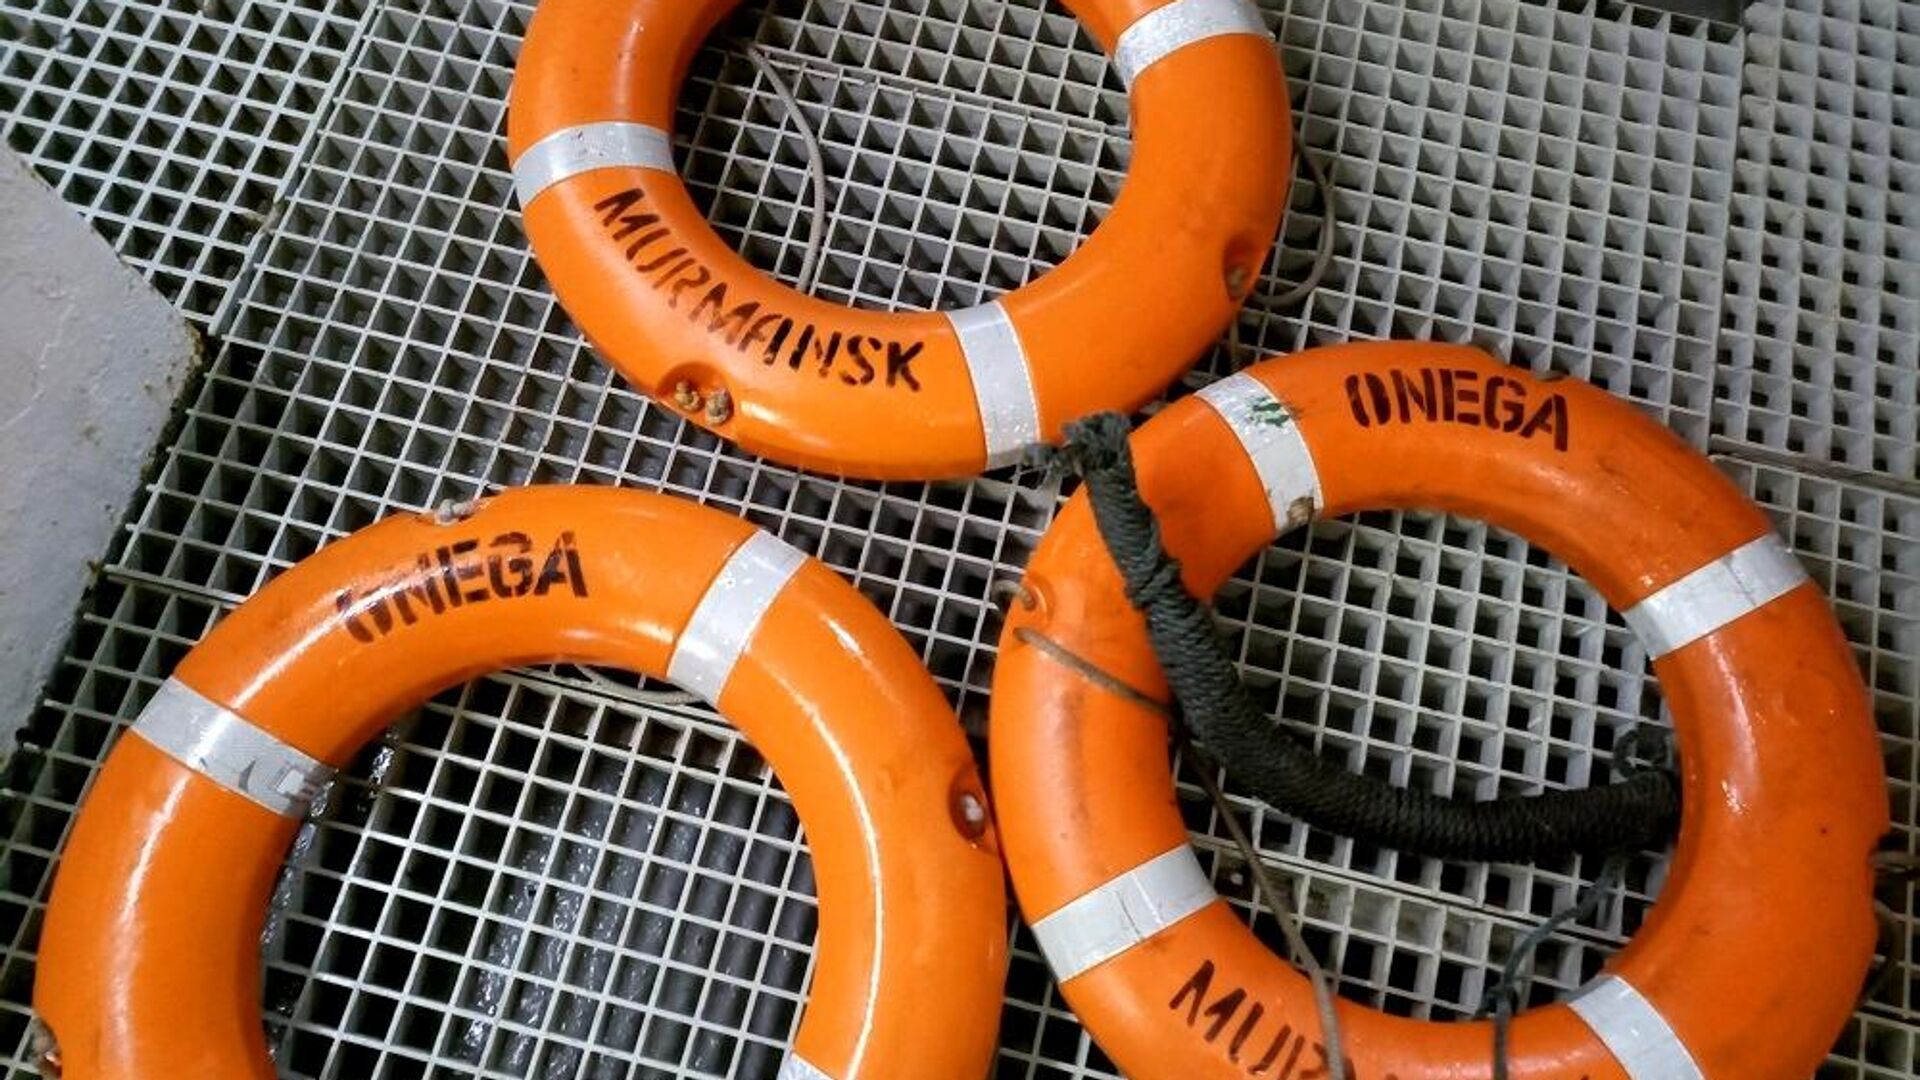 Спасательные круги с затонувшего рыболовного судна Онега, обнаруженные в ходе поисковой операции в Баренцевом море - РИА Новости, 1920, 29.12.2020